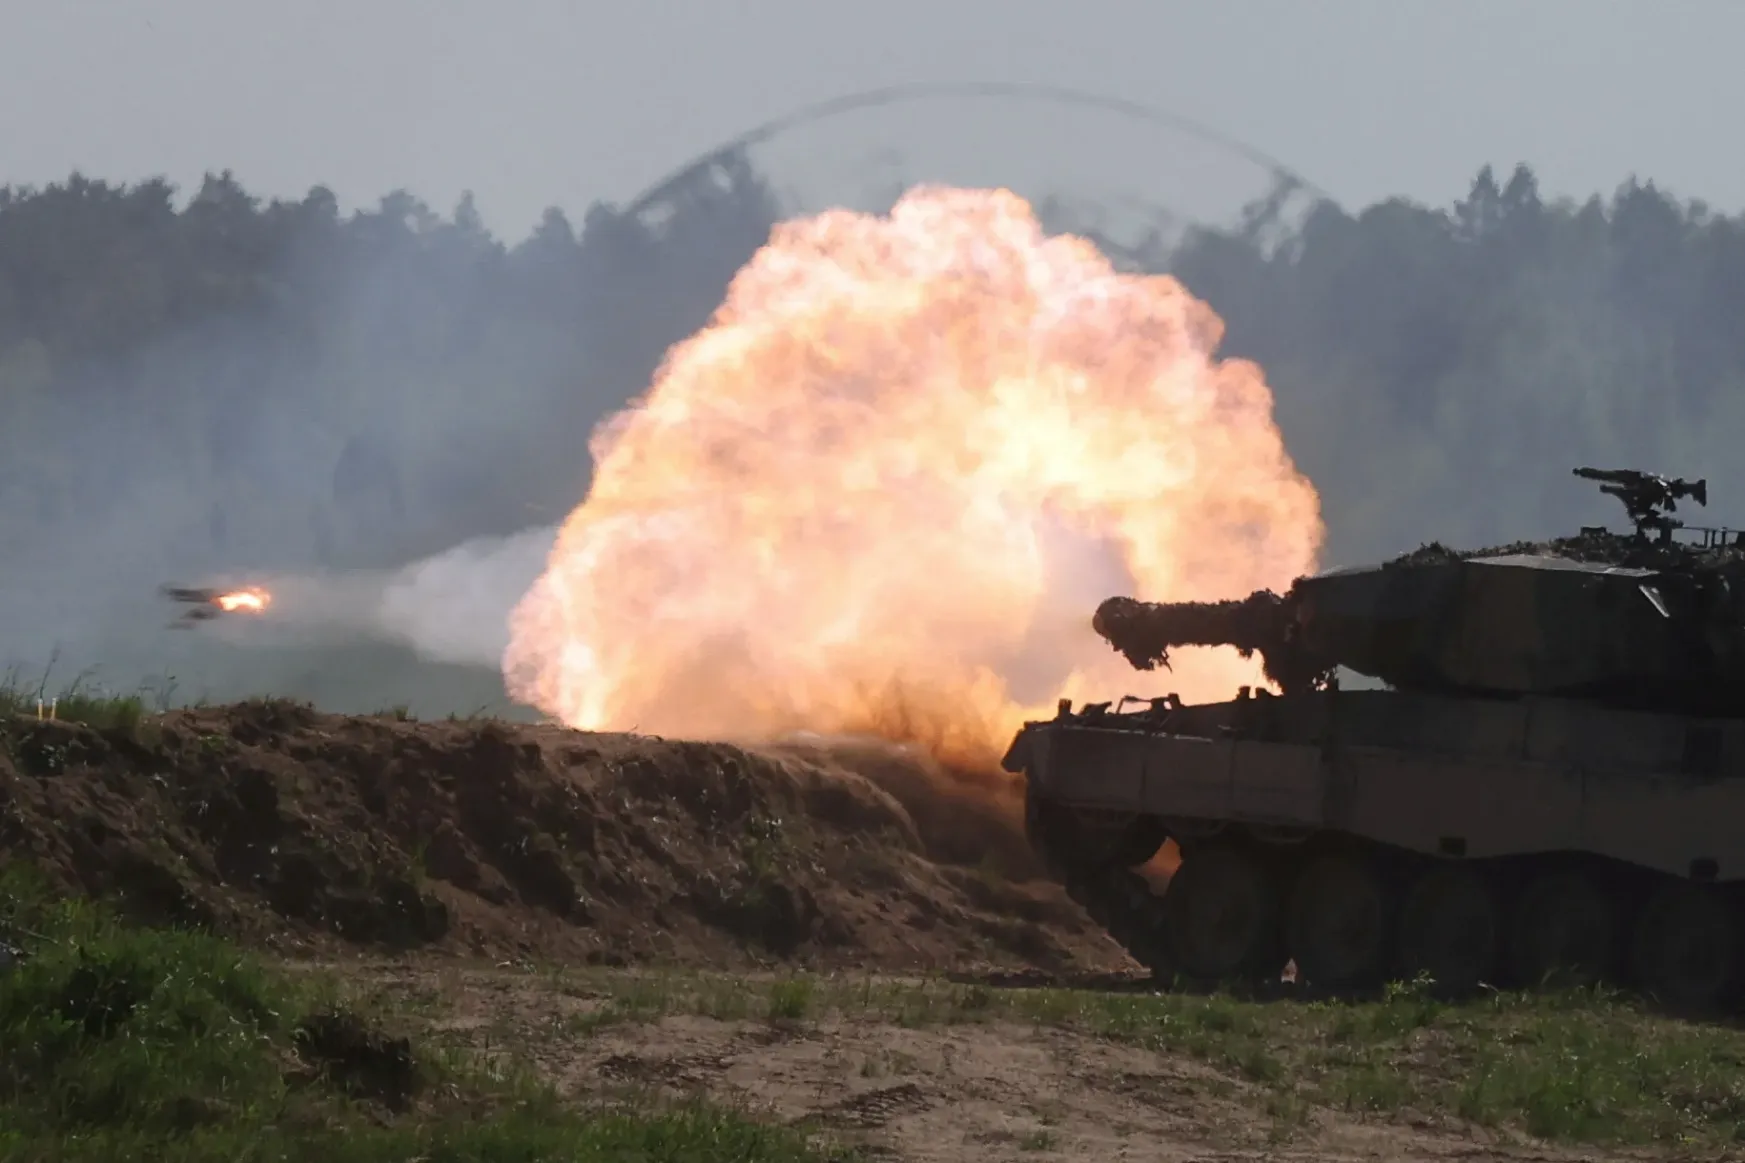 Amerika is hivatalos bejelentést tett, M1 Abrams harckocsikat küldenek Ukrajnába